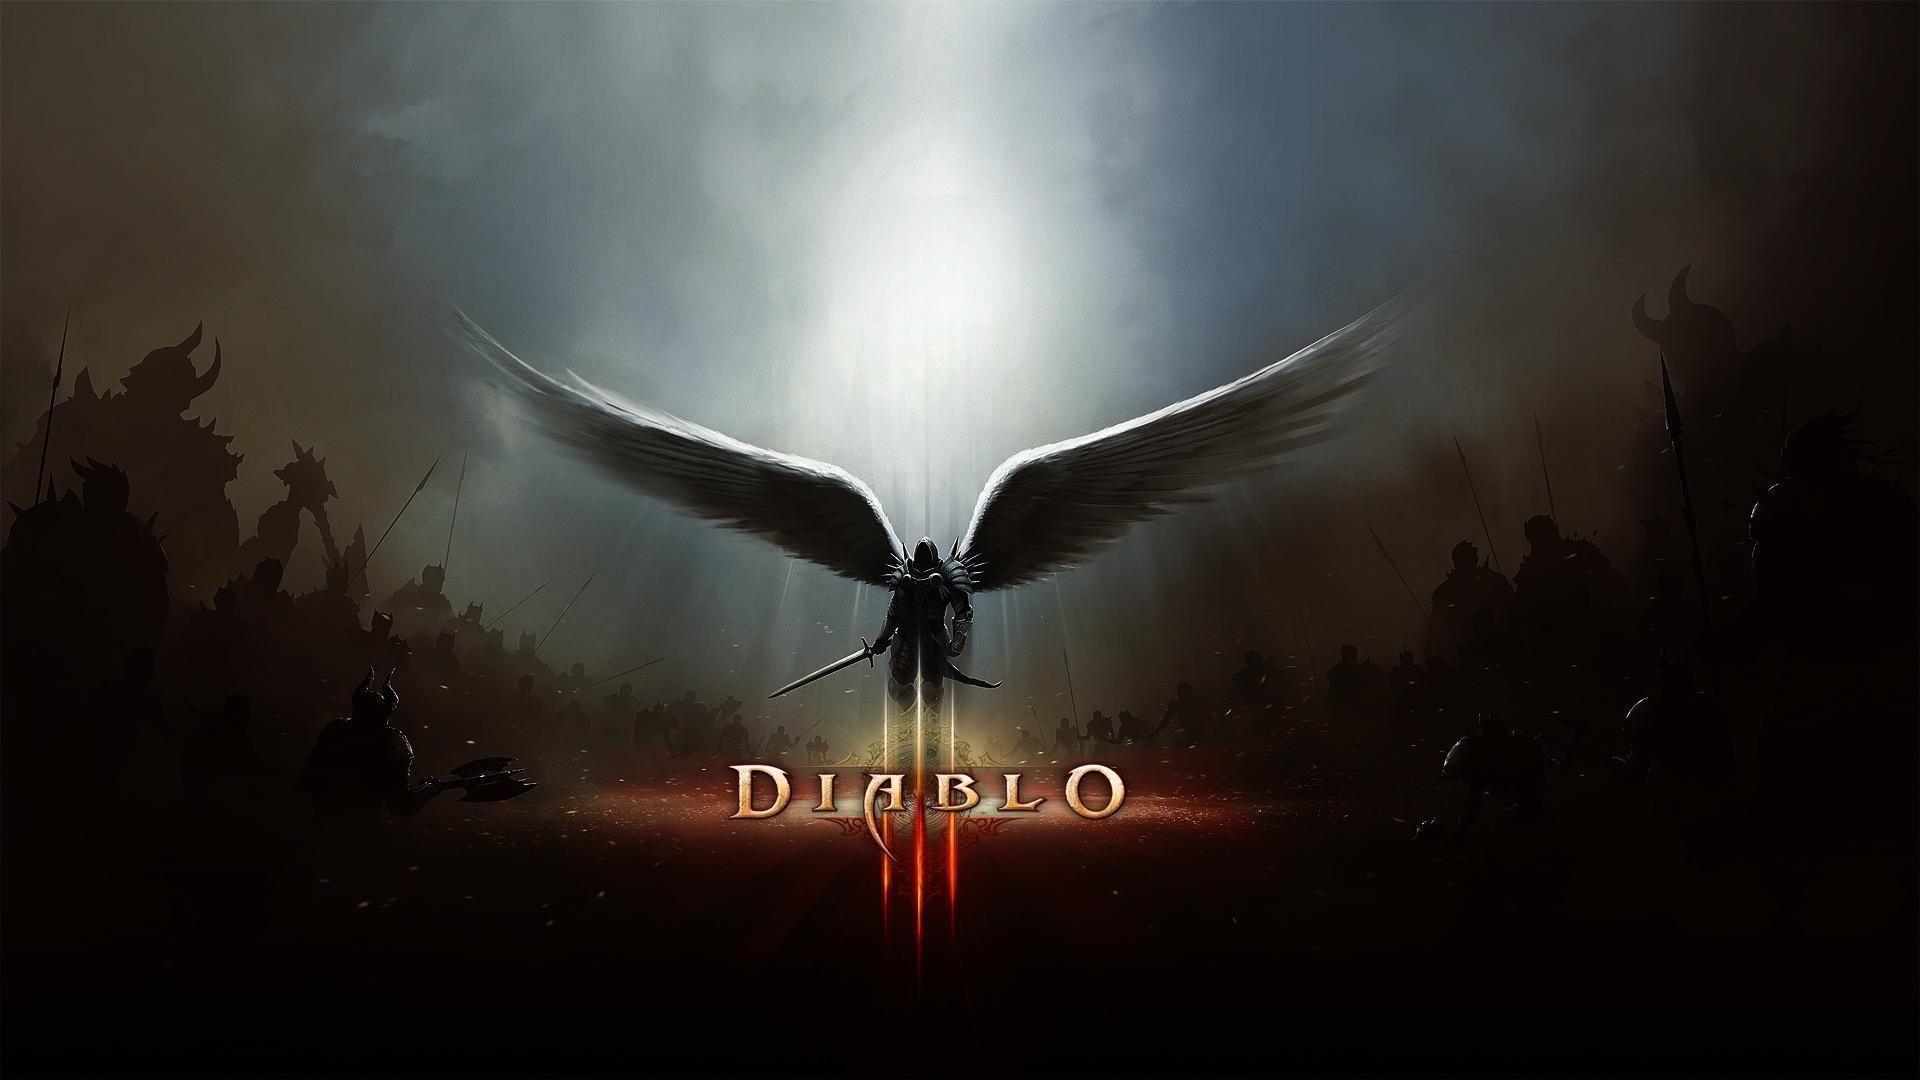 Diablo III Wallpaper HD (High Definition)